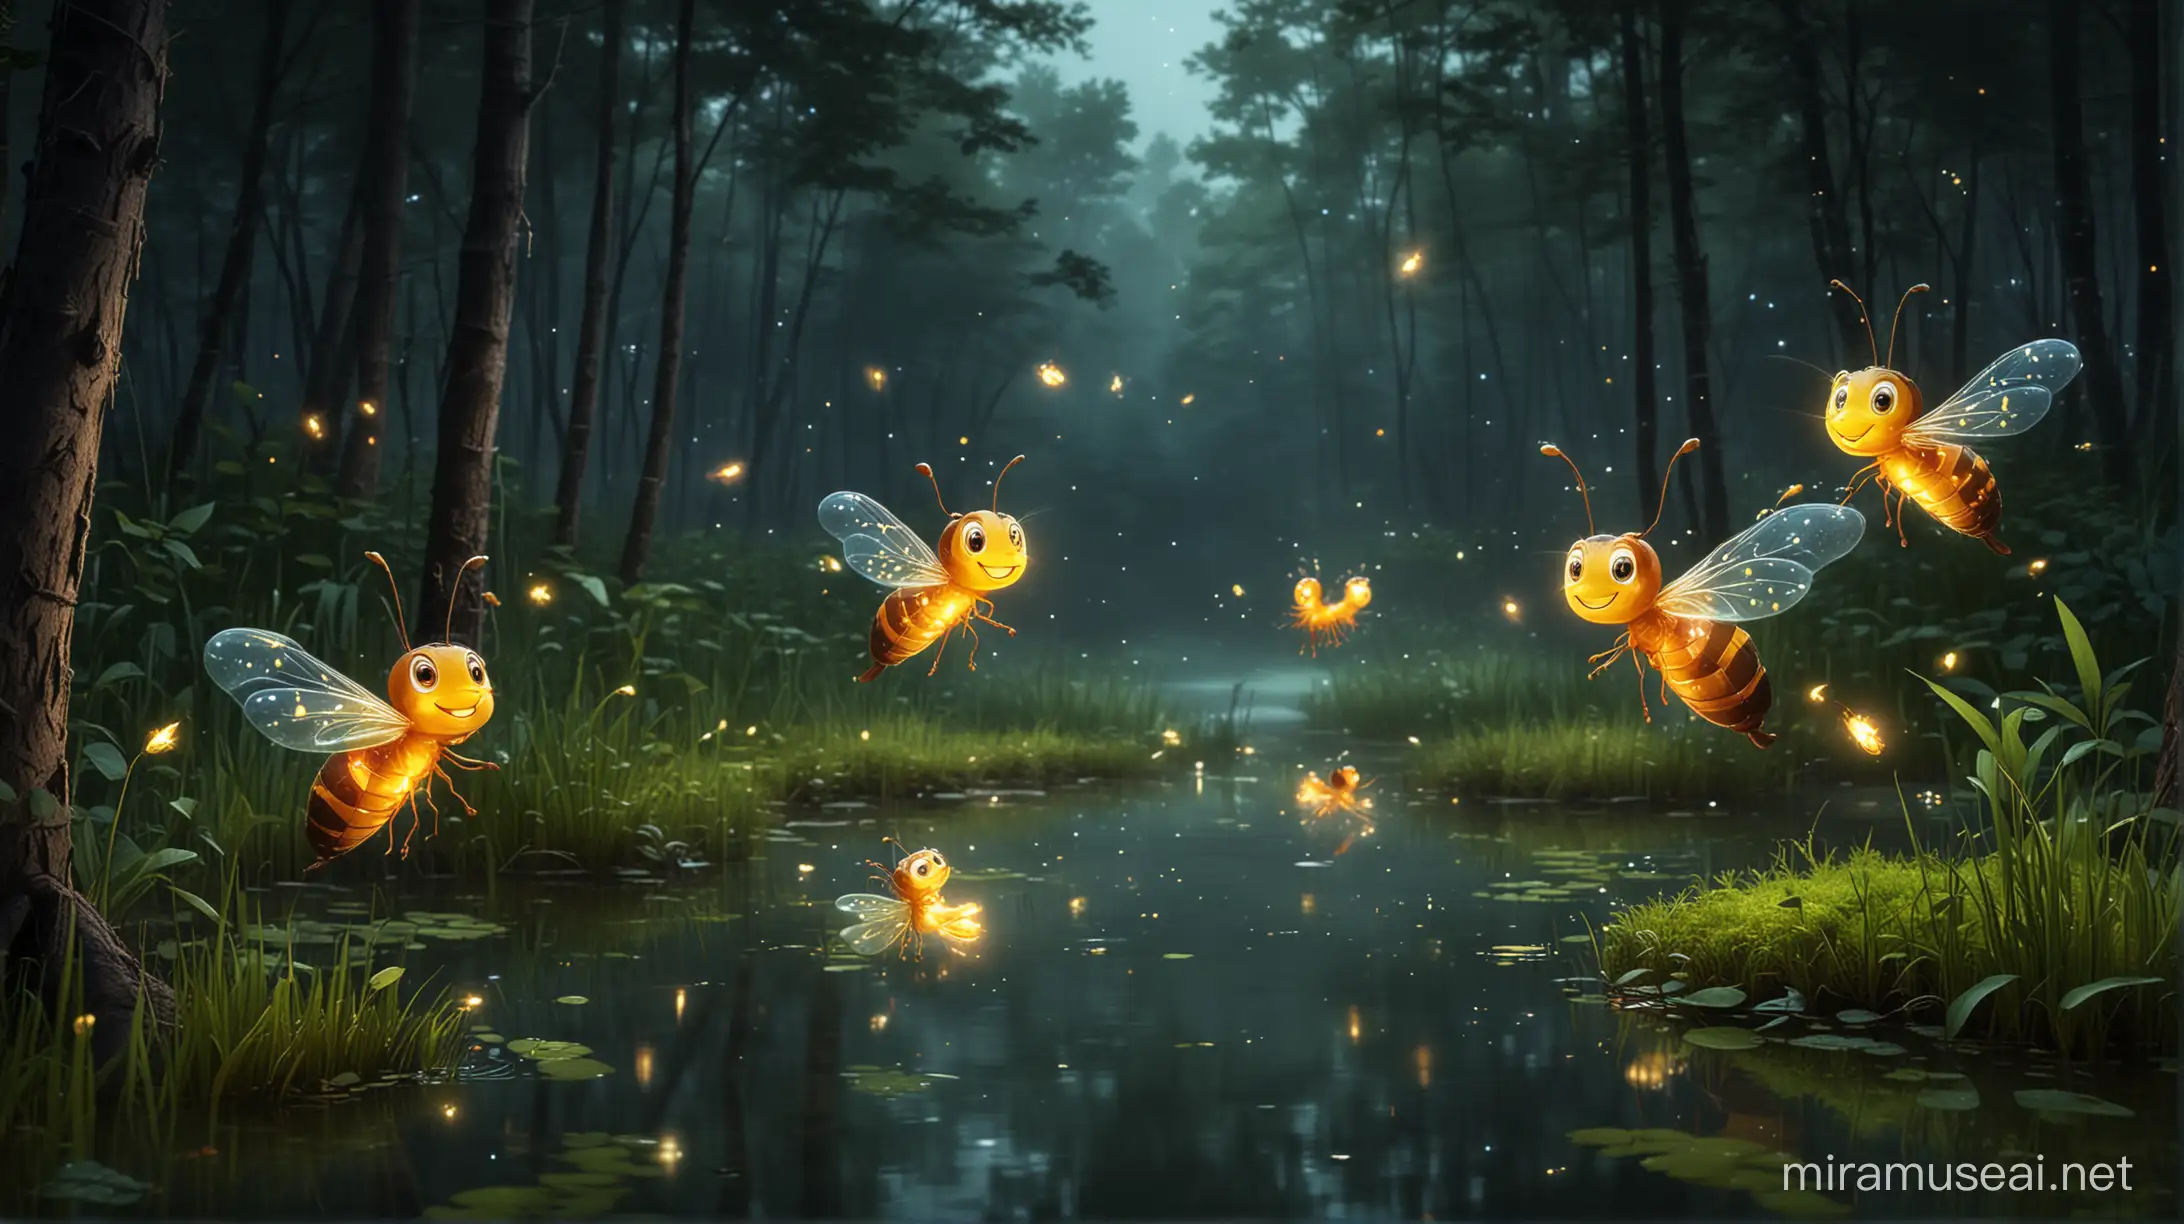 Joyful Fireflies Dancing over Forest Pond